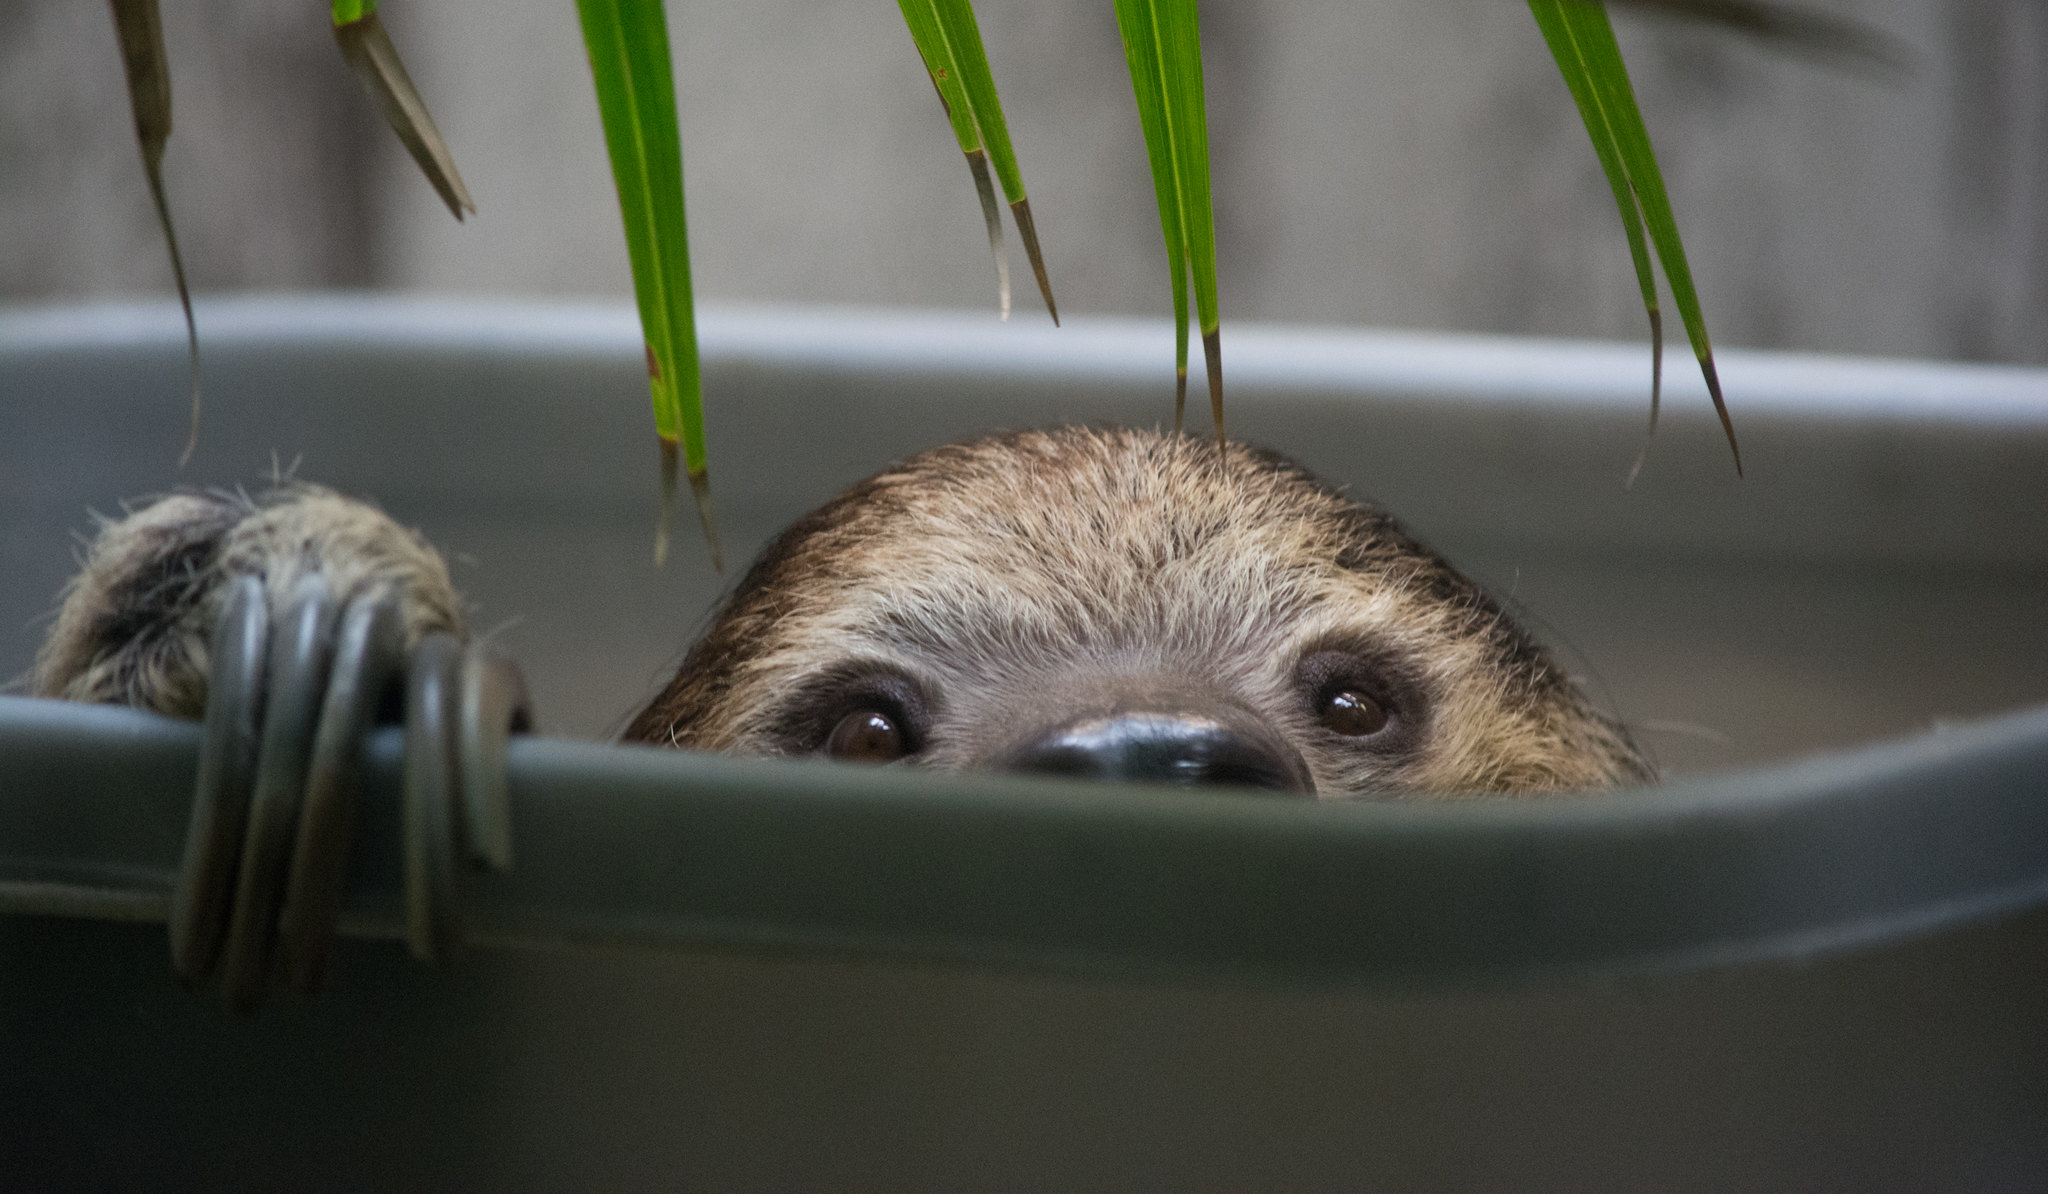 sleepy two-toed sloth wakes up - Cleveland Zoo